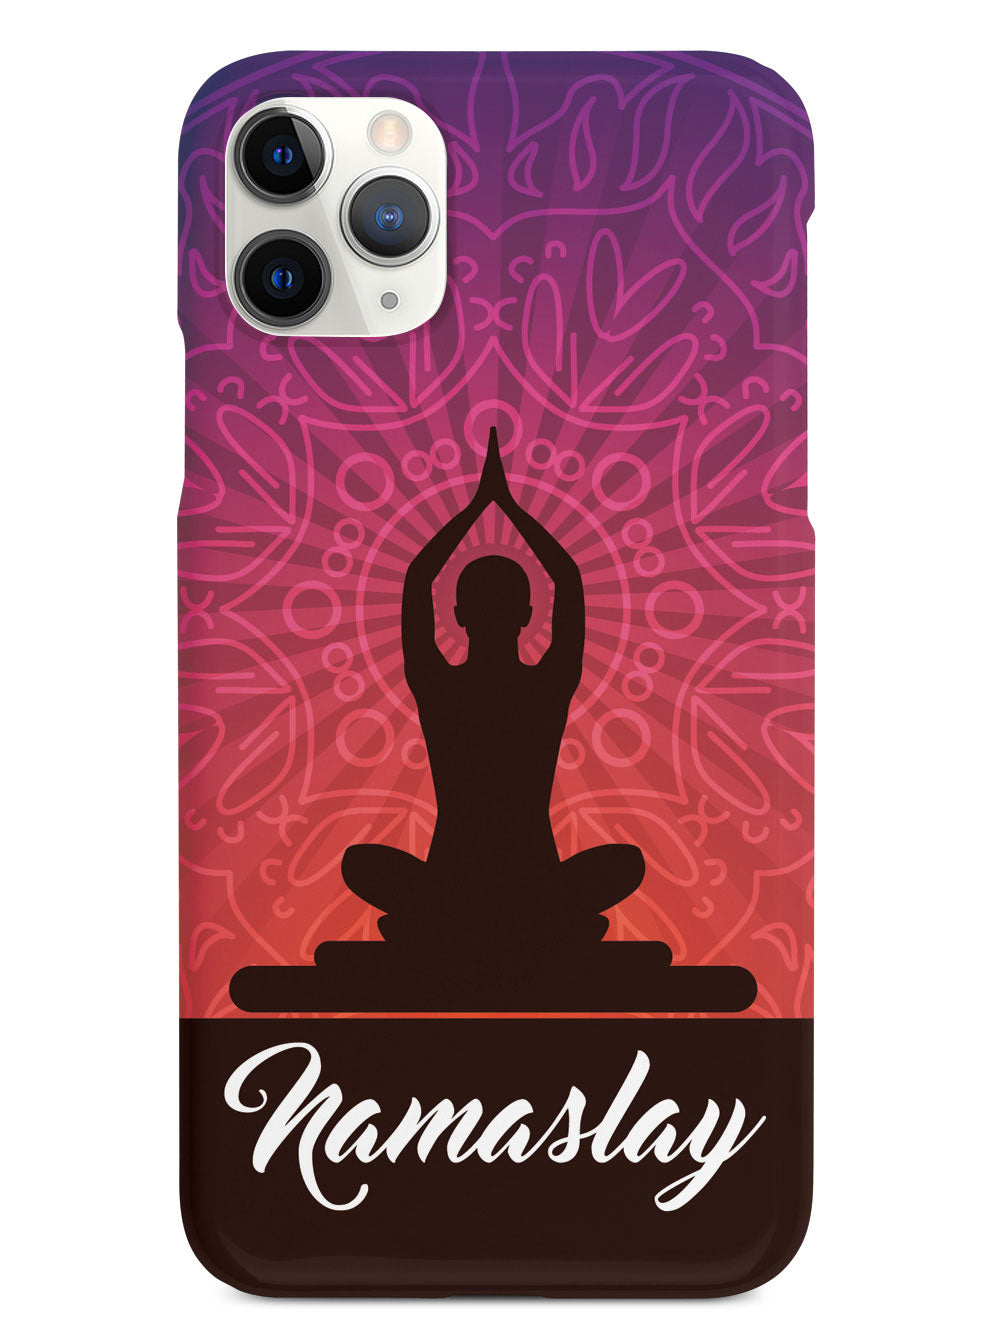 Yoga - Namaslay - White Case